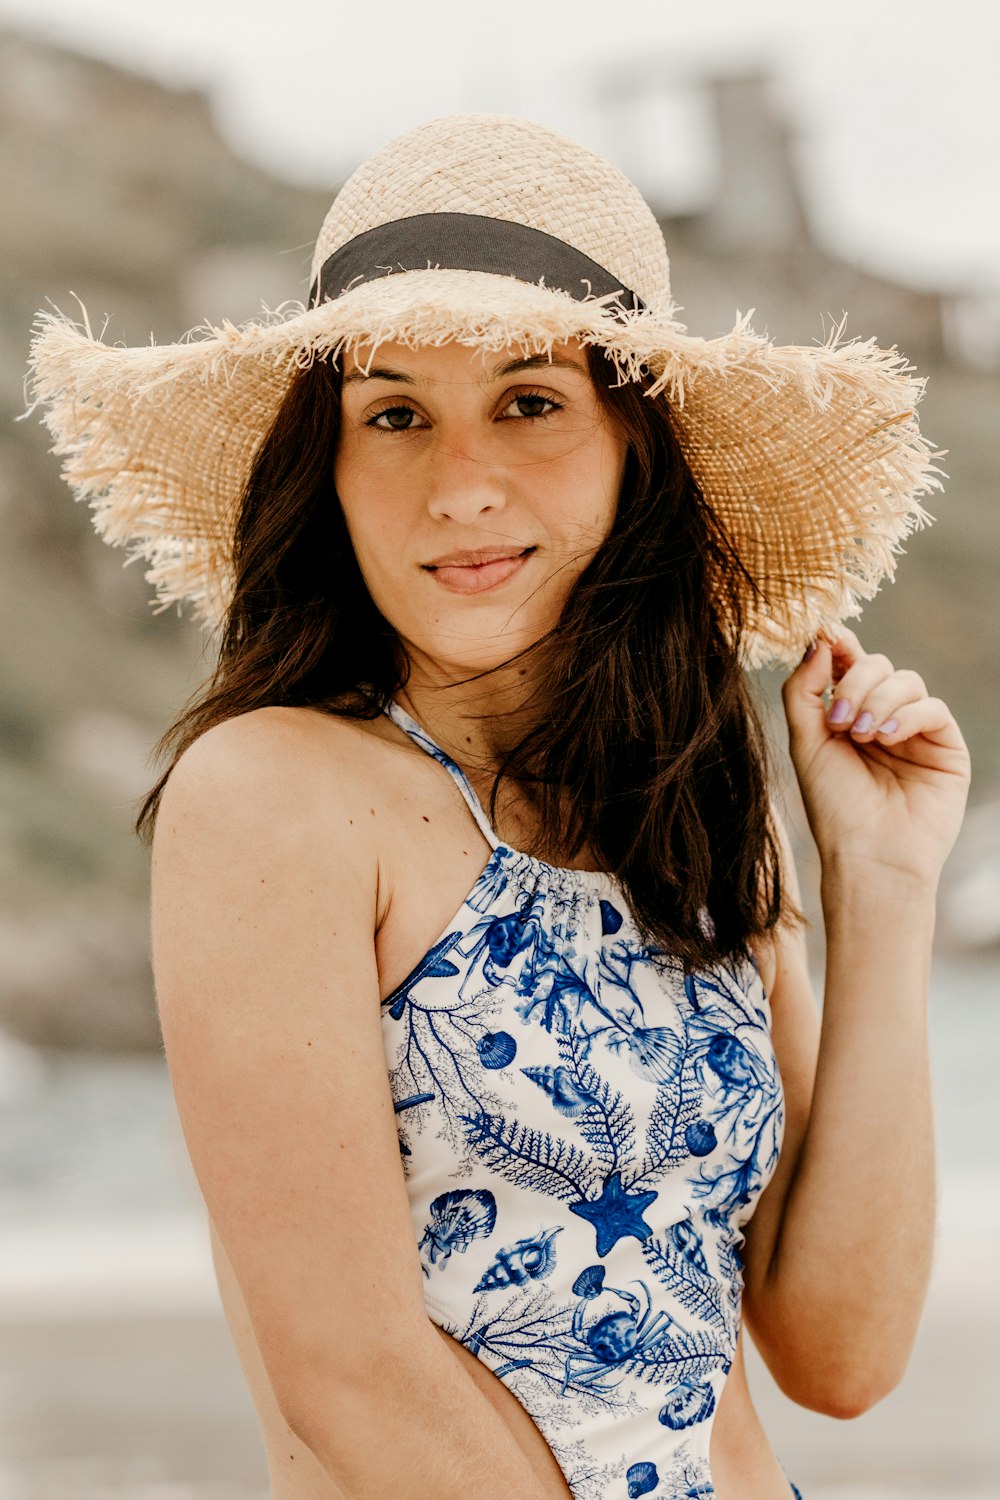 Femme en débardeur floral bleu et blanc portant un chapeau de soleil marron